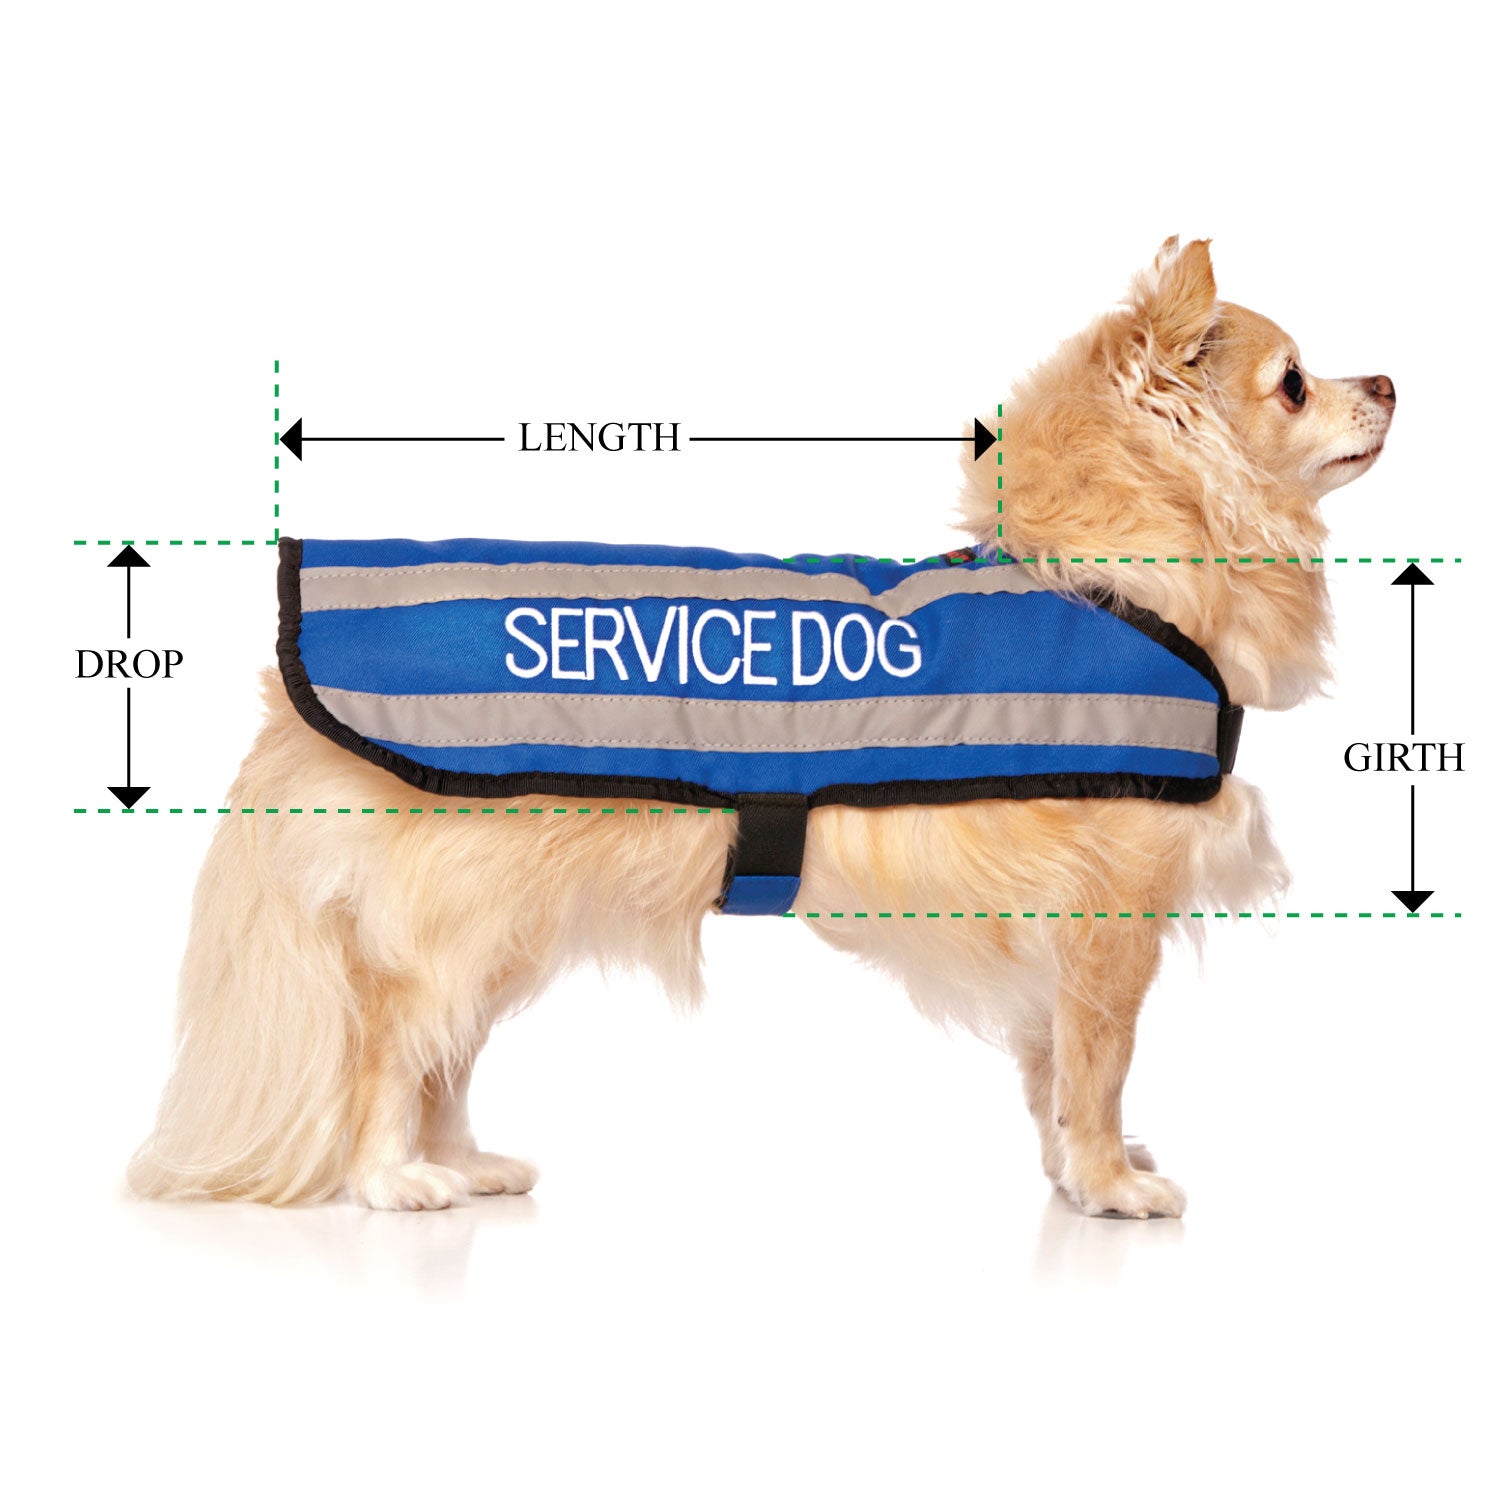 SERVICE DOG - Small Coat